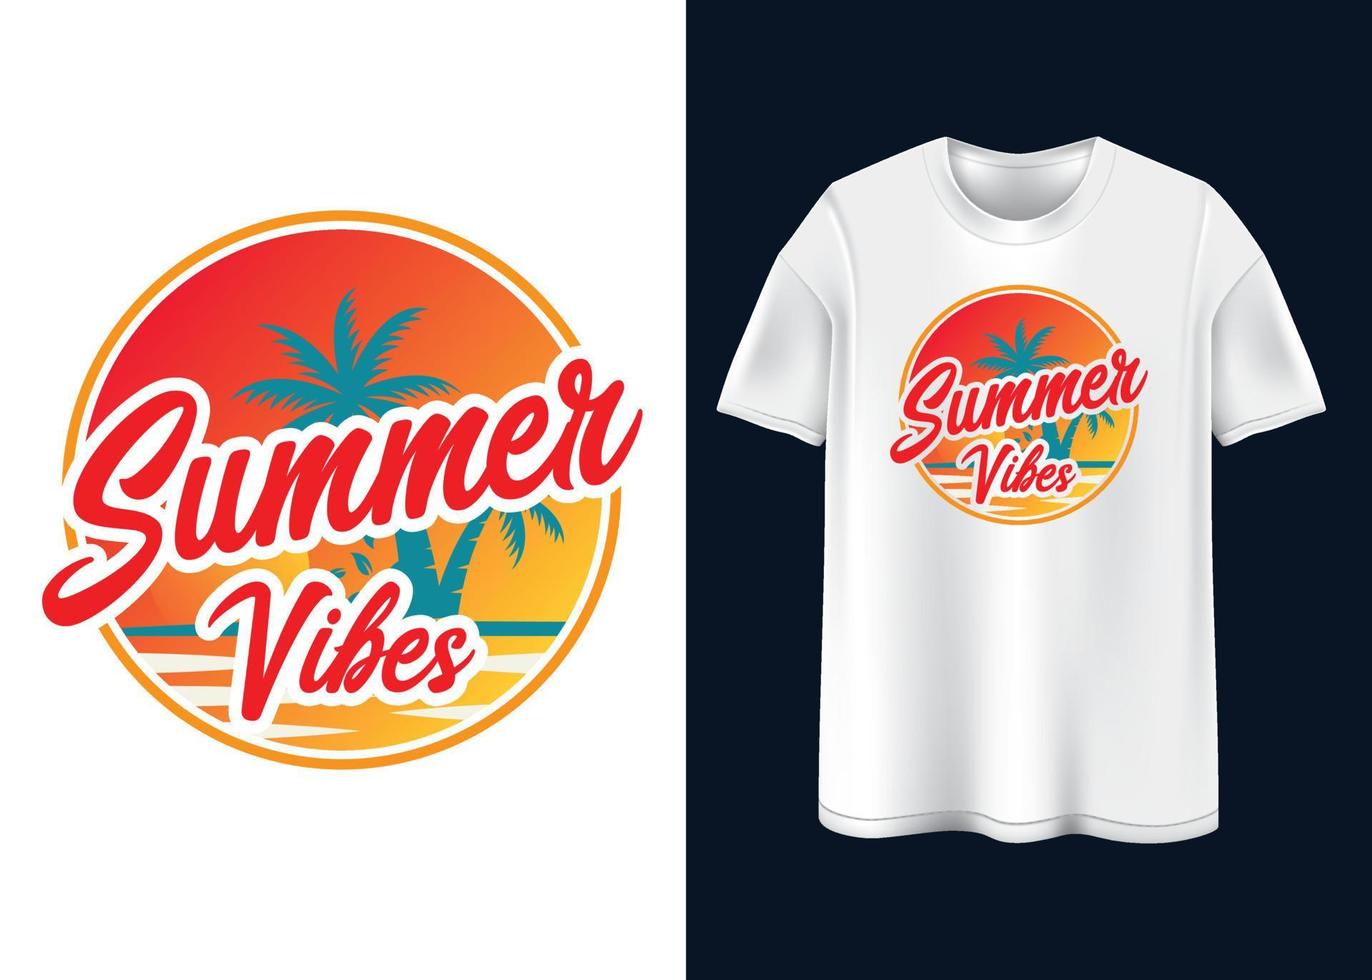 zomer gevoel typografie t-shirt ontwerp vector